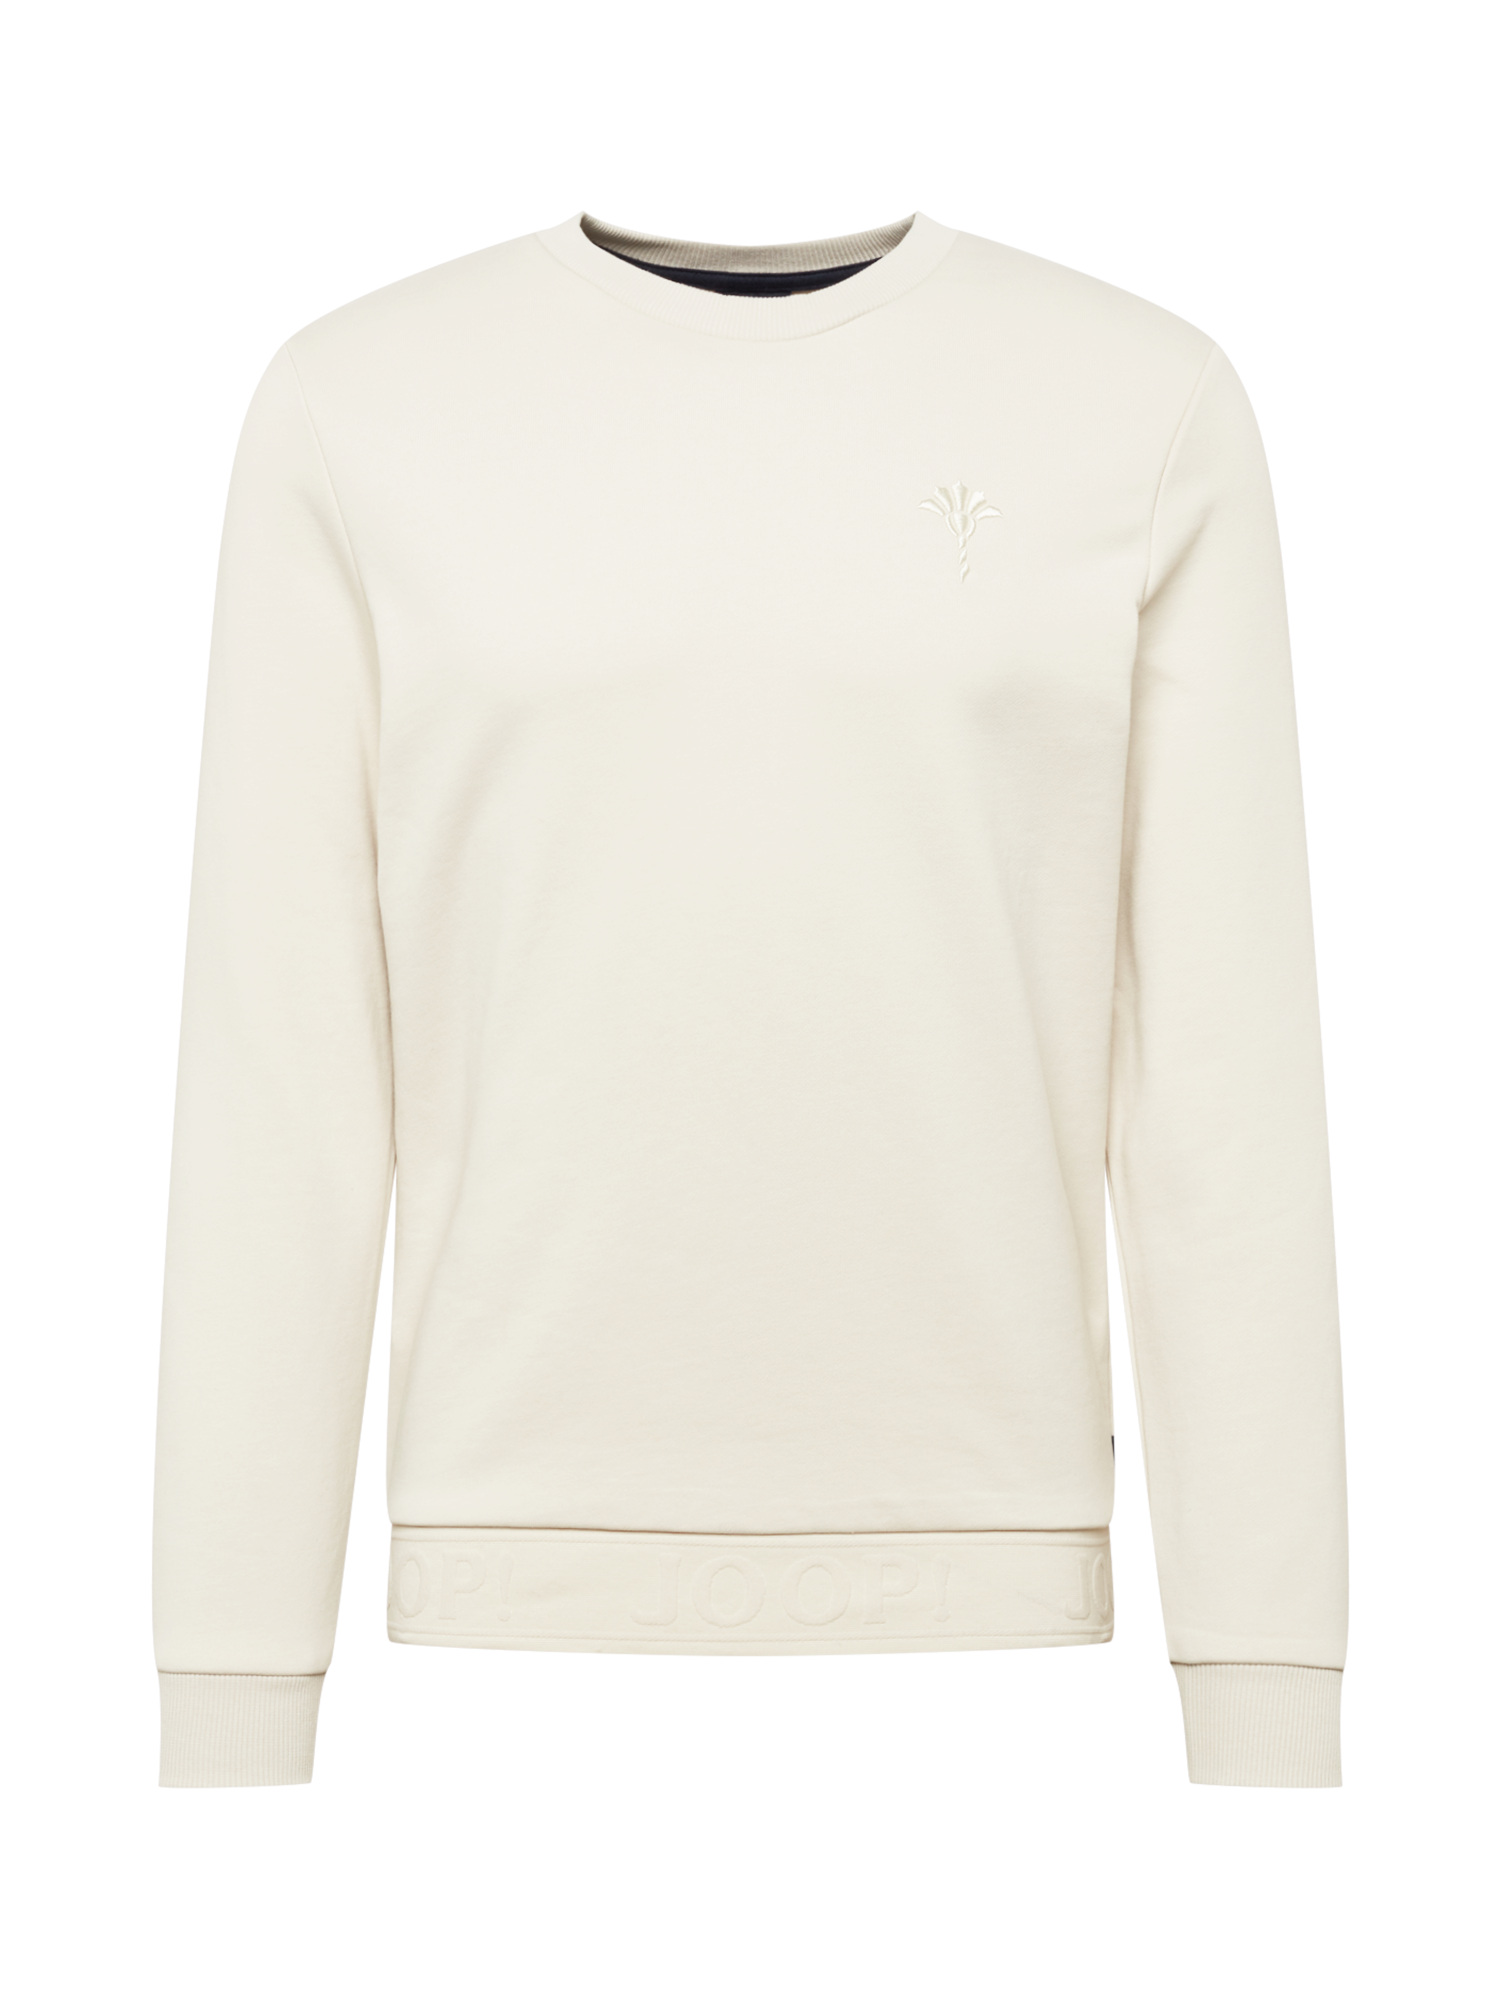 Odzież Mężczyźni JOOP  Bluzka sportowa w kolorze Białym 